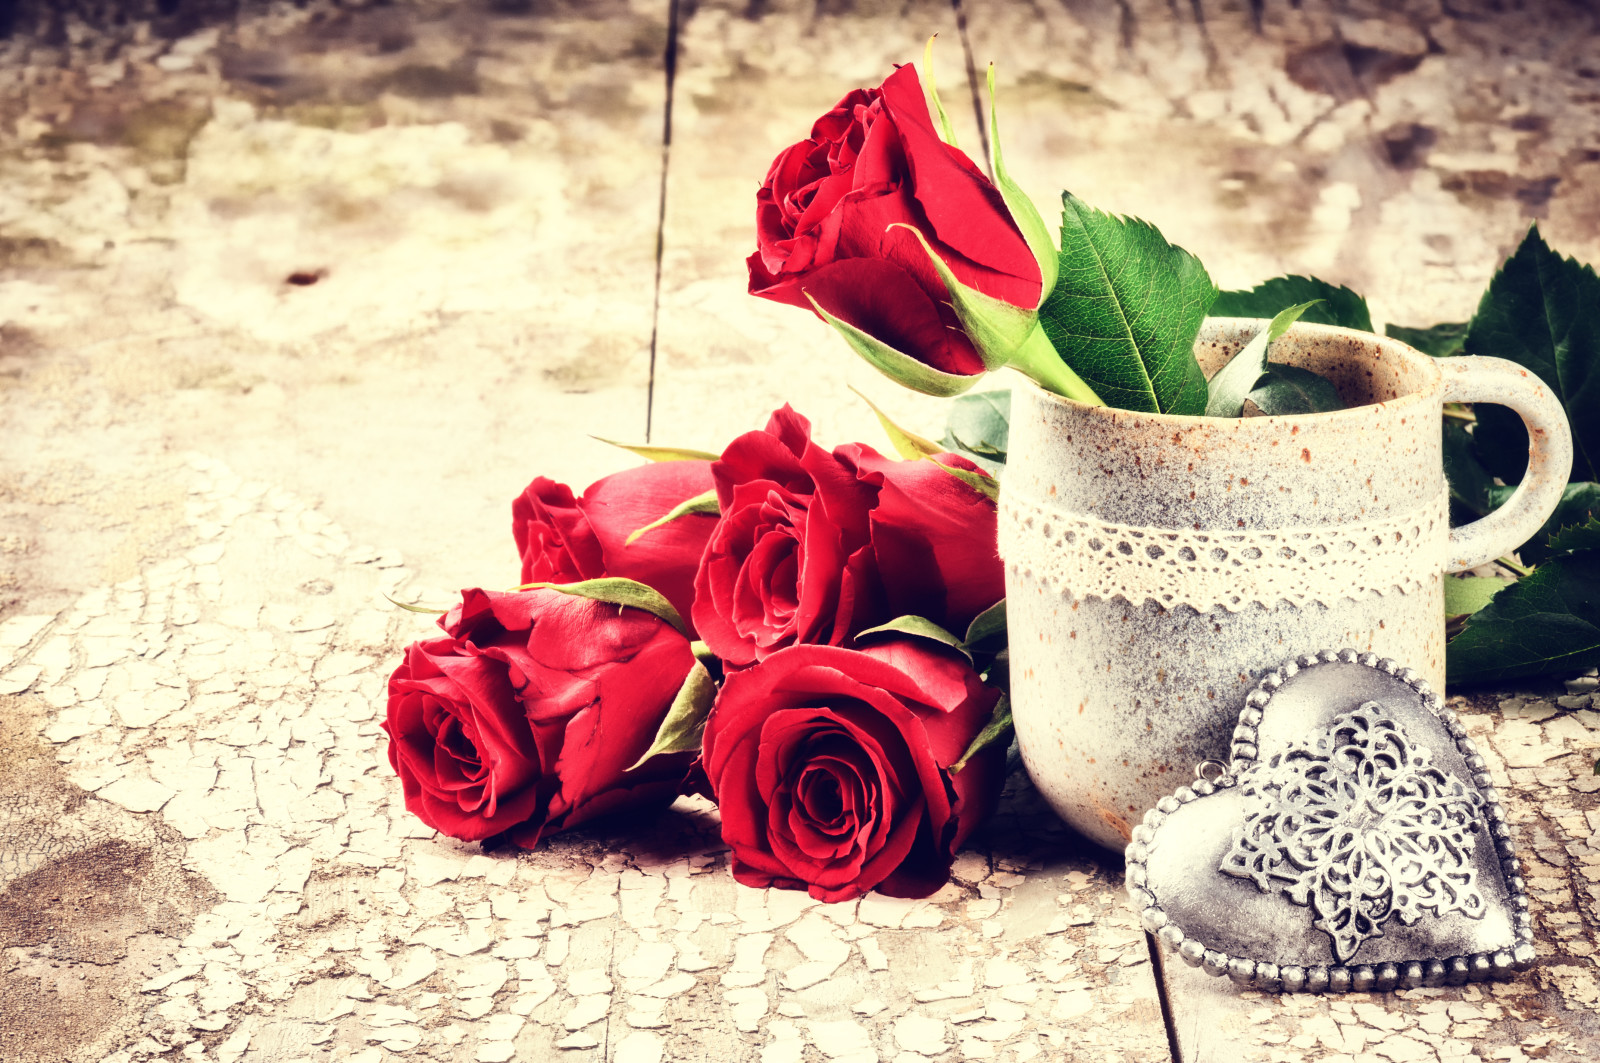 yêu và quý, lãng mạn, ngày lễ tình nhân, hoa hồng, tim